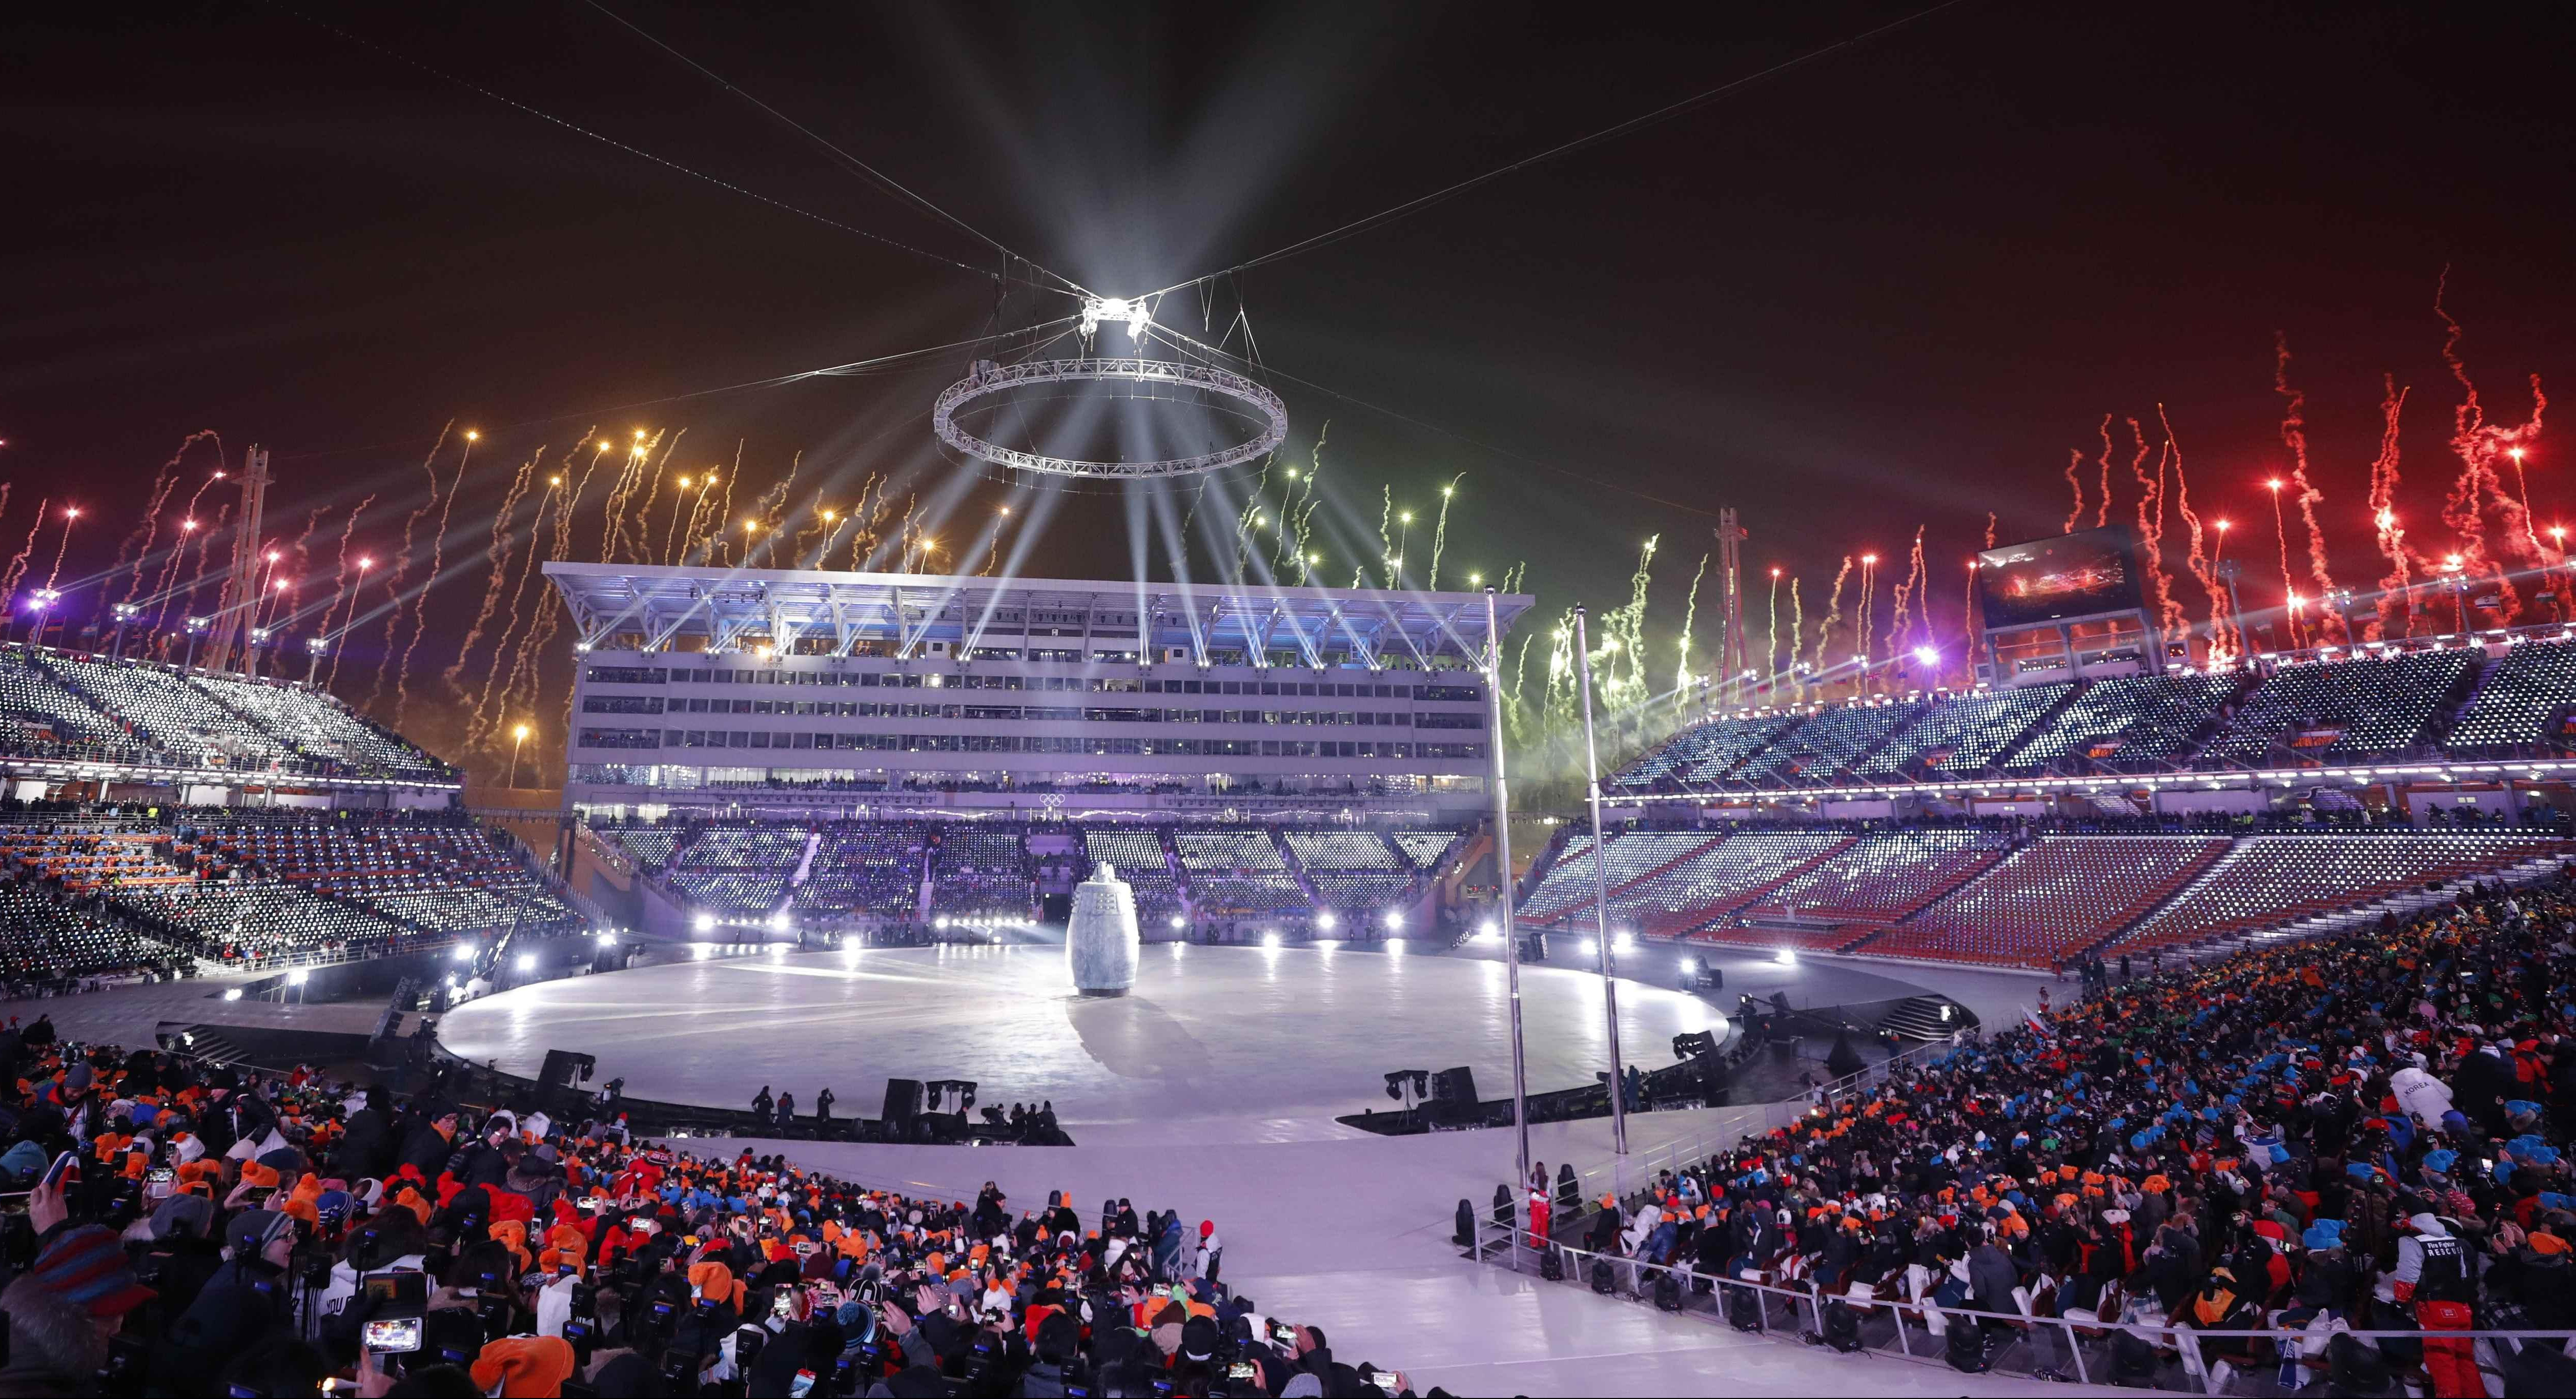 SPEKTAKL U PJONGČANGU! Otvorene Zimske olimpijske igre!